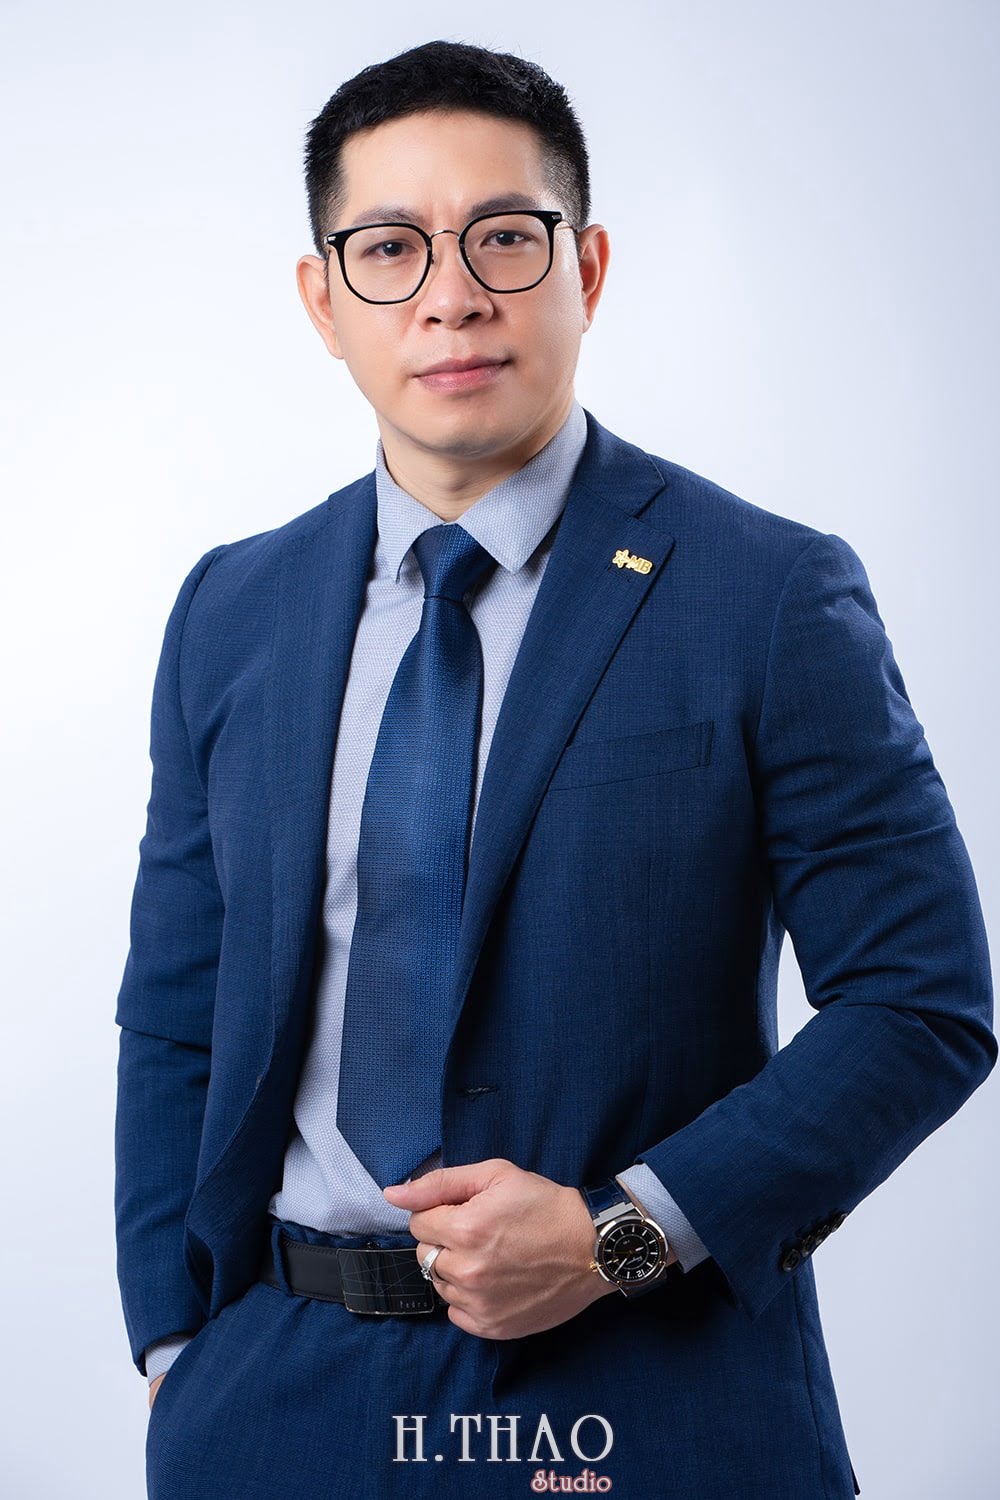 giam doc ngan hang 4 - Tổng hợp ảnh profile nghề nghiệp bác sĩ, ngân hàng đẹp- HThao Studio